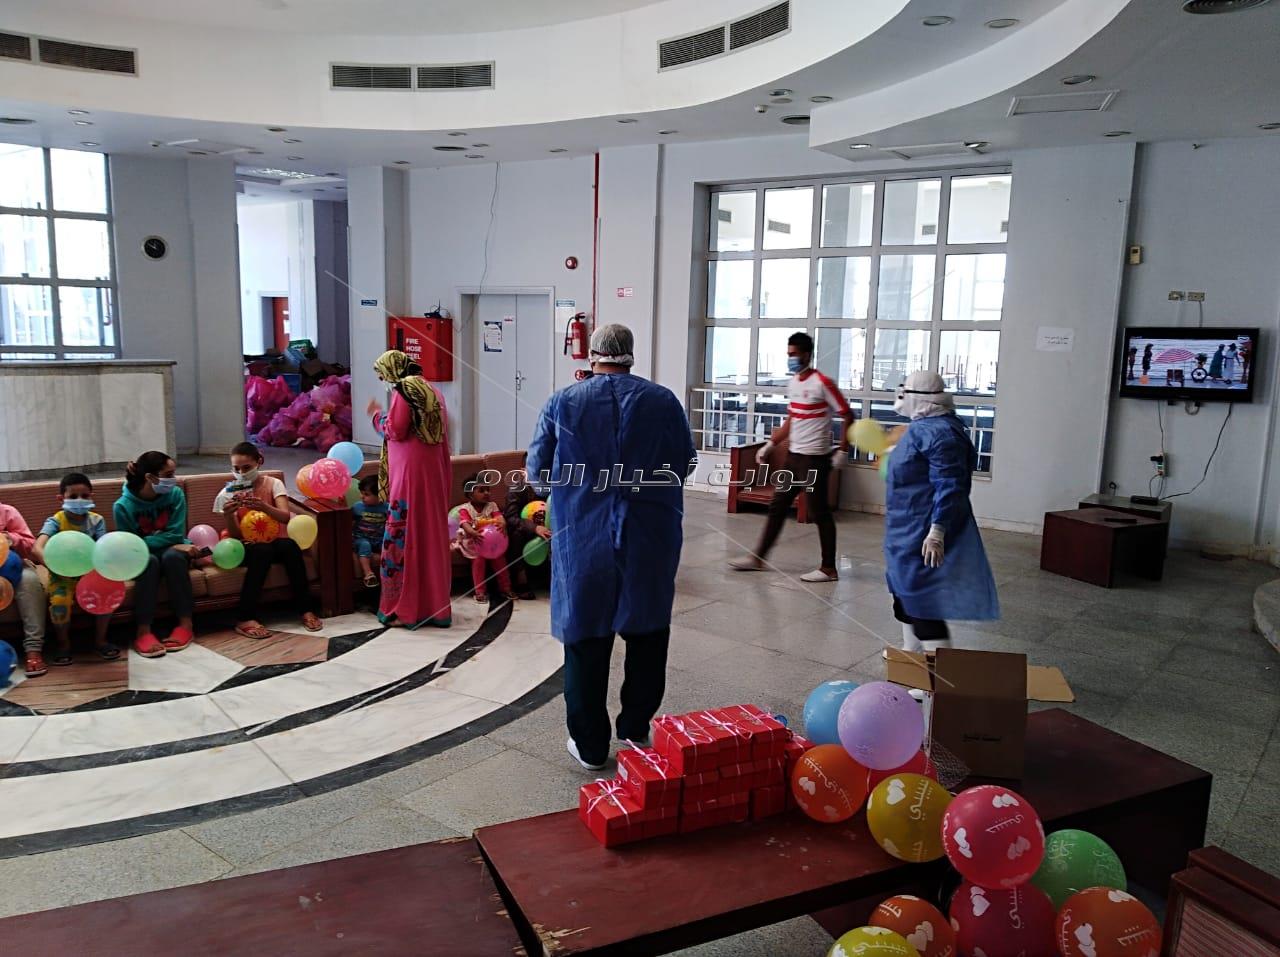  بالصور والفيديو  .مركز التدريب المدنى بدمنهور يحتفل بالعيد مع الأطفال بالأغاني وتوزيع الهدايا 